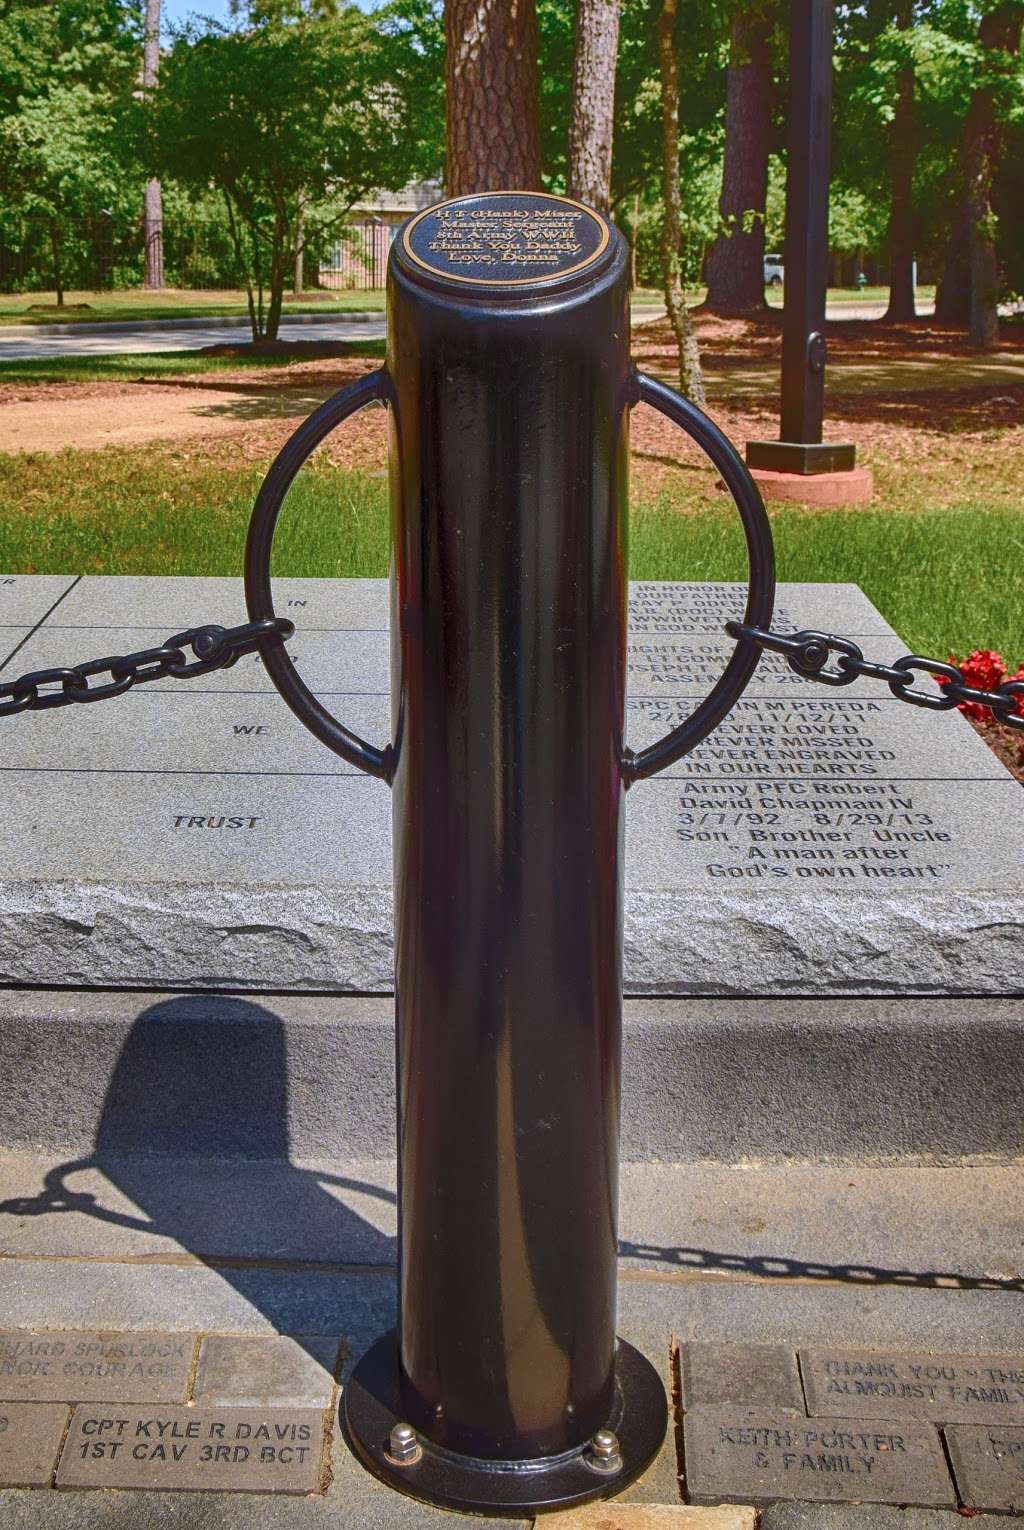 Fallen Warriors Memorial | Cutten Rd, Houston, TX 77069, USA | Phone: (832) 868-9810